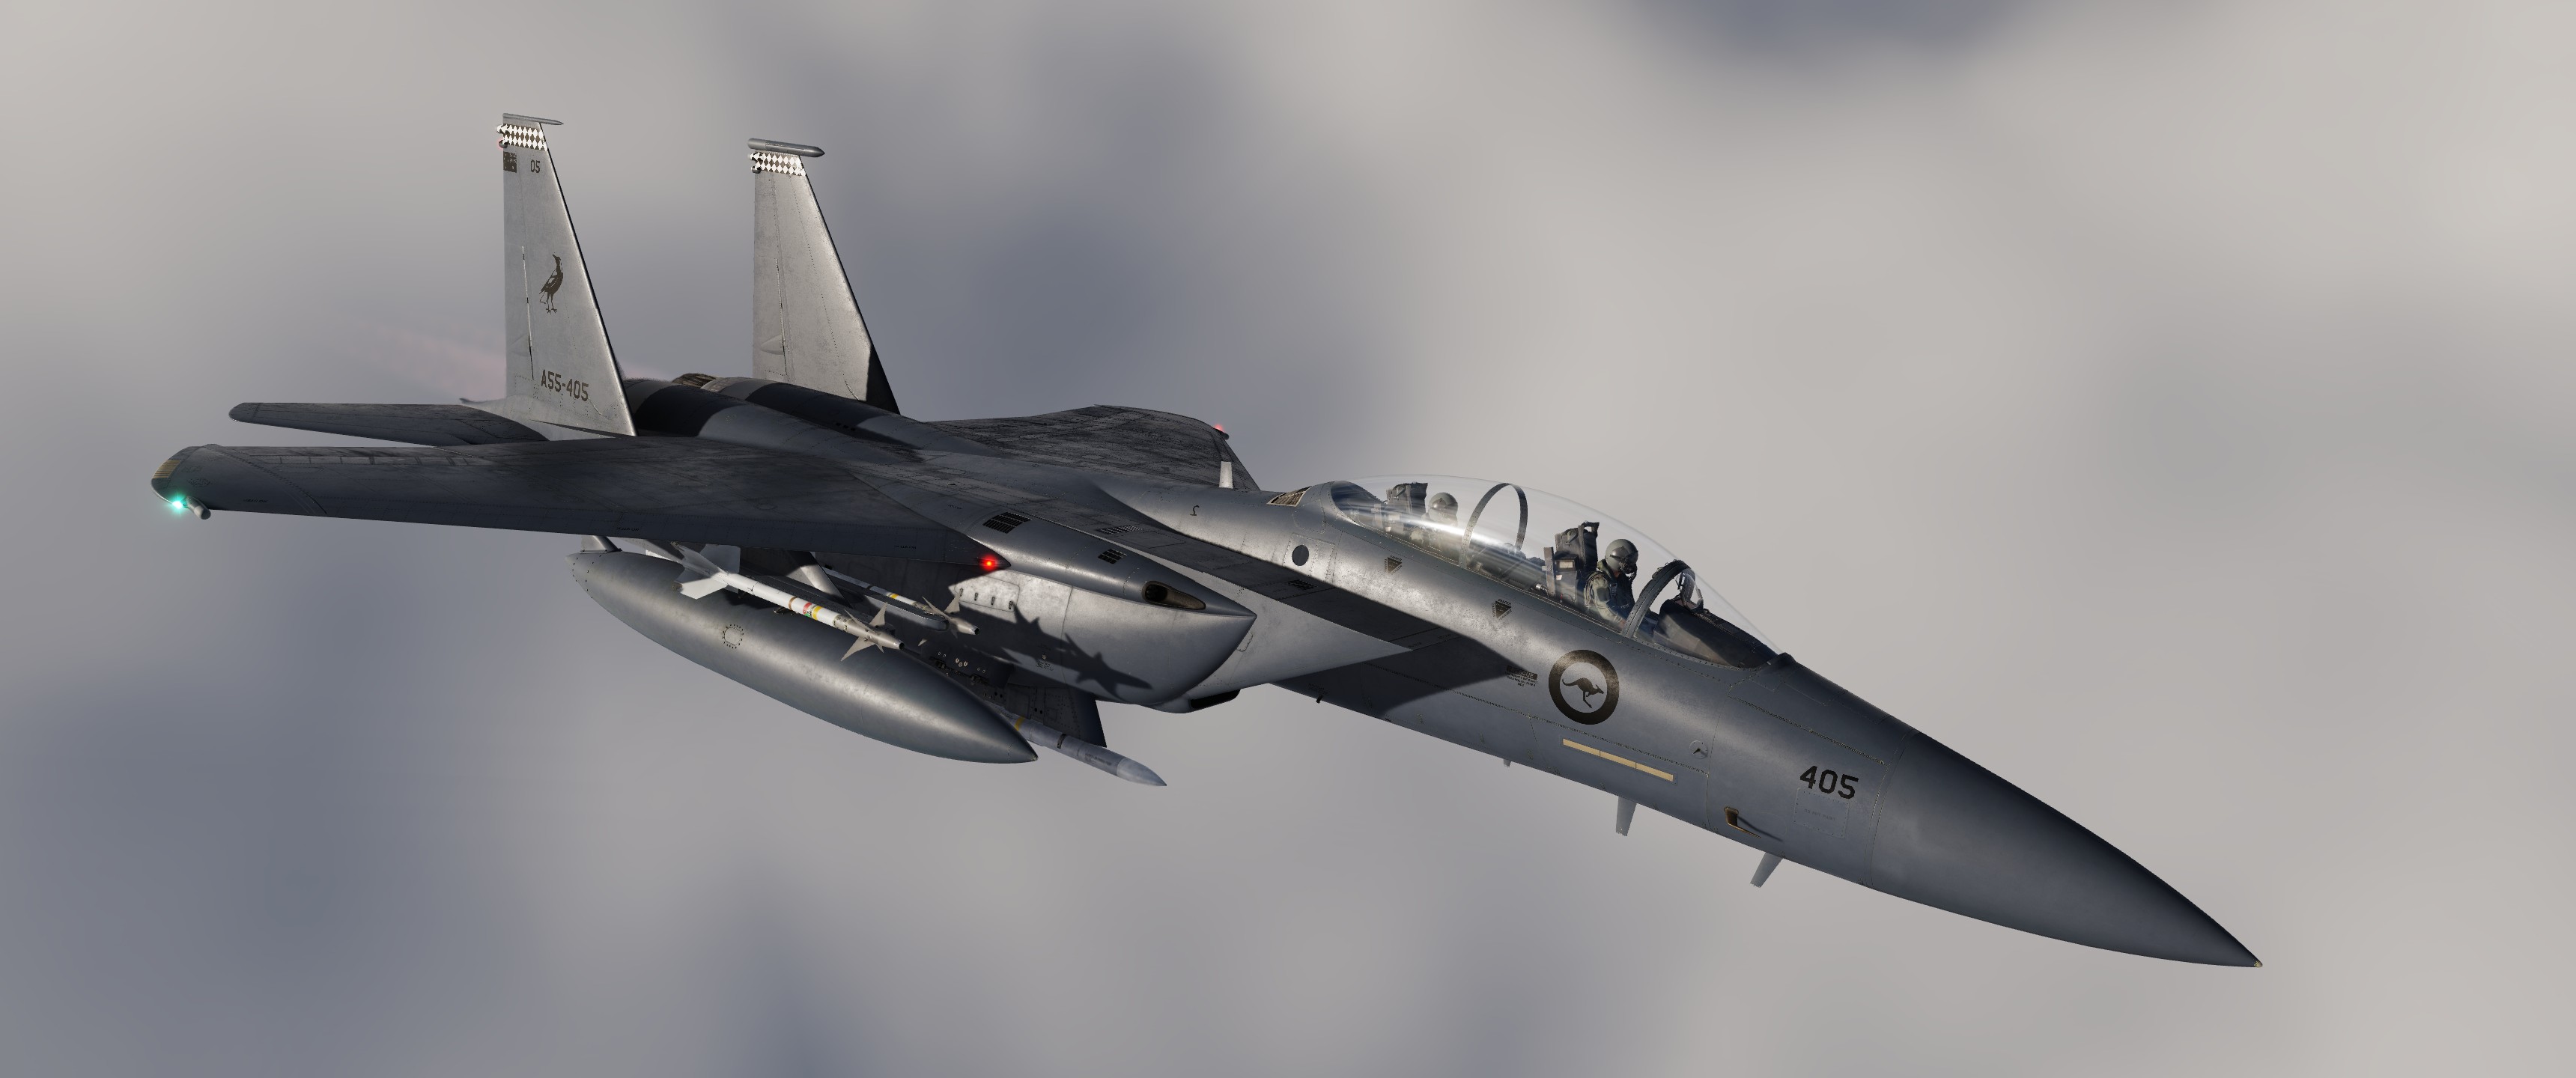 A55-405 F-15E 75 SQN RAAF (Fictional)